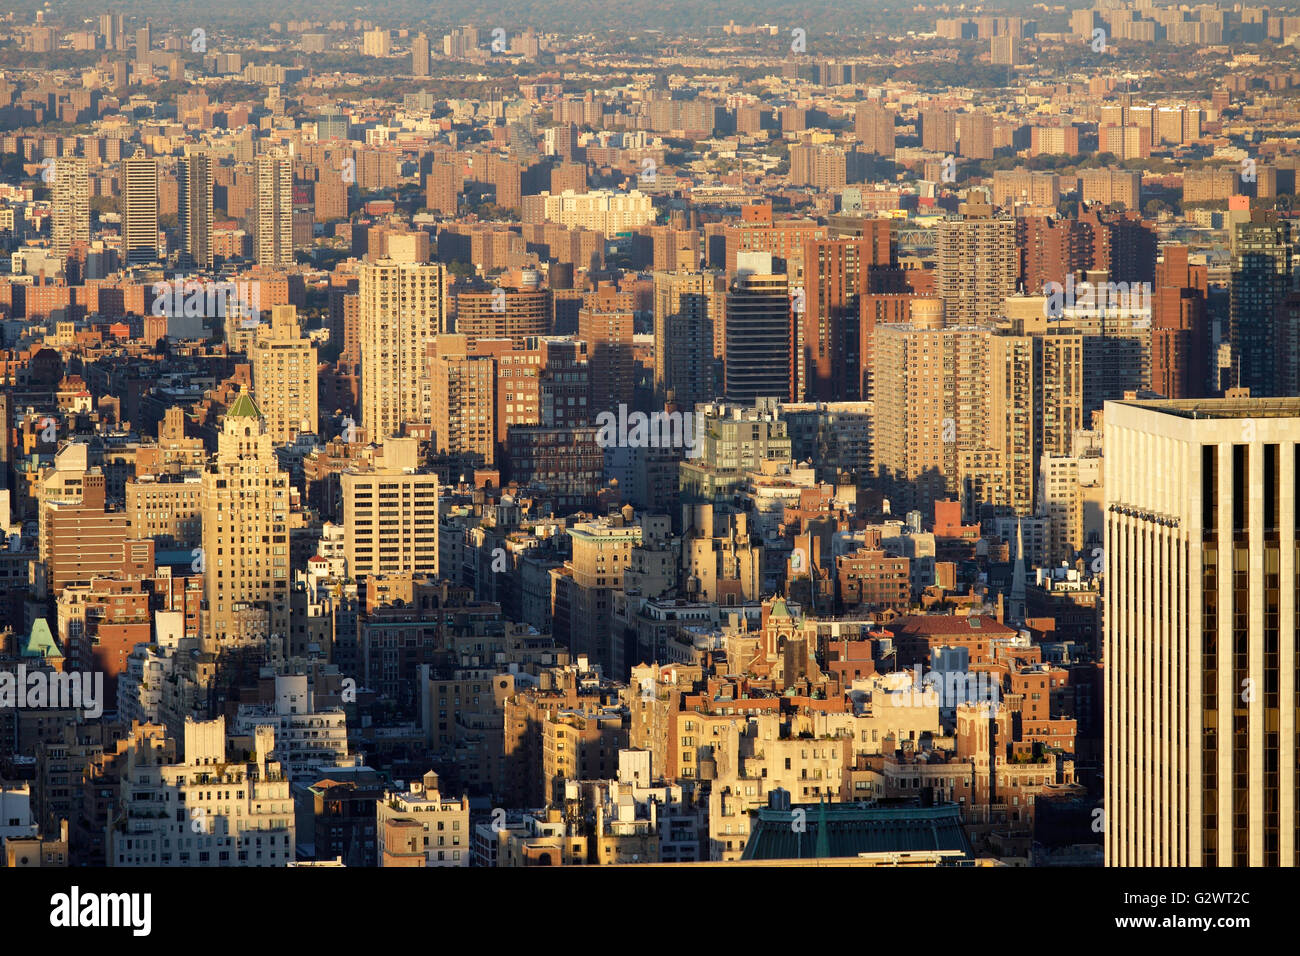 26.10.2015, New York City, New York, USA - Skyline von Harlem im Abendlicht. 00P151026D239CAROEX. JPG - nicht für den Verkauf in G E R M A N Y, A U S T R I A S W I T Z E R L A N D [MODEL-RELEASE: nicht anwendbar, PROPERTY-RELEASE: Nein, (C) Caro Fotoagentur / Muhs, http://www.caro-images.com, info@carofoto.pl - jegliche Nutzung dieses Bildes unterliegt GEMA!] Stockfoto